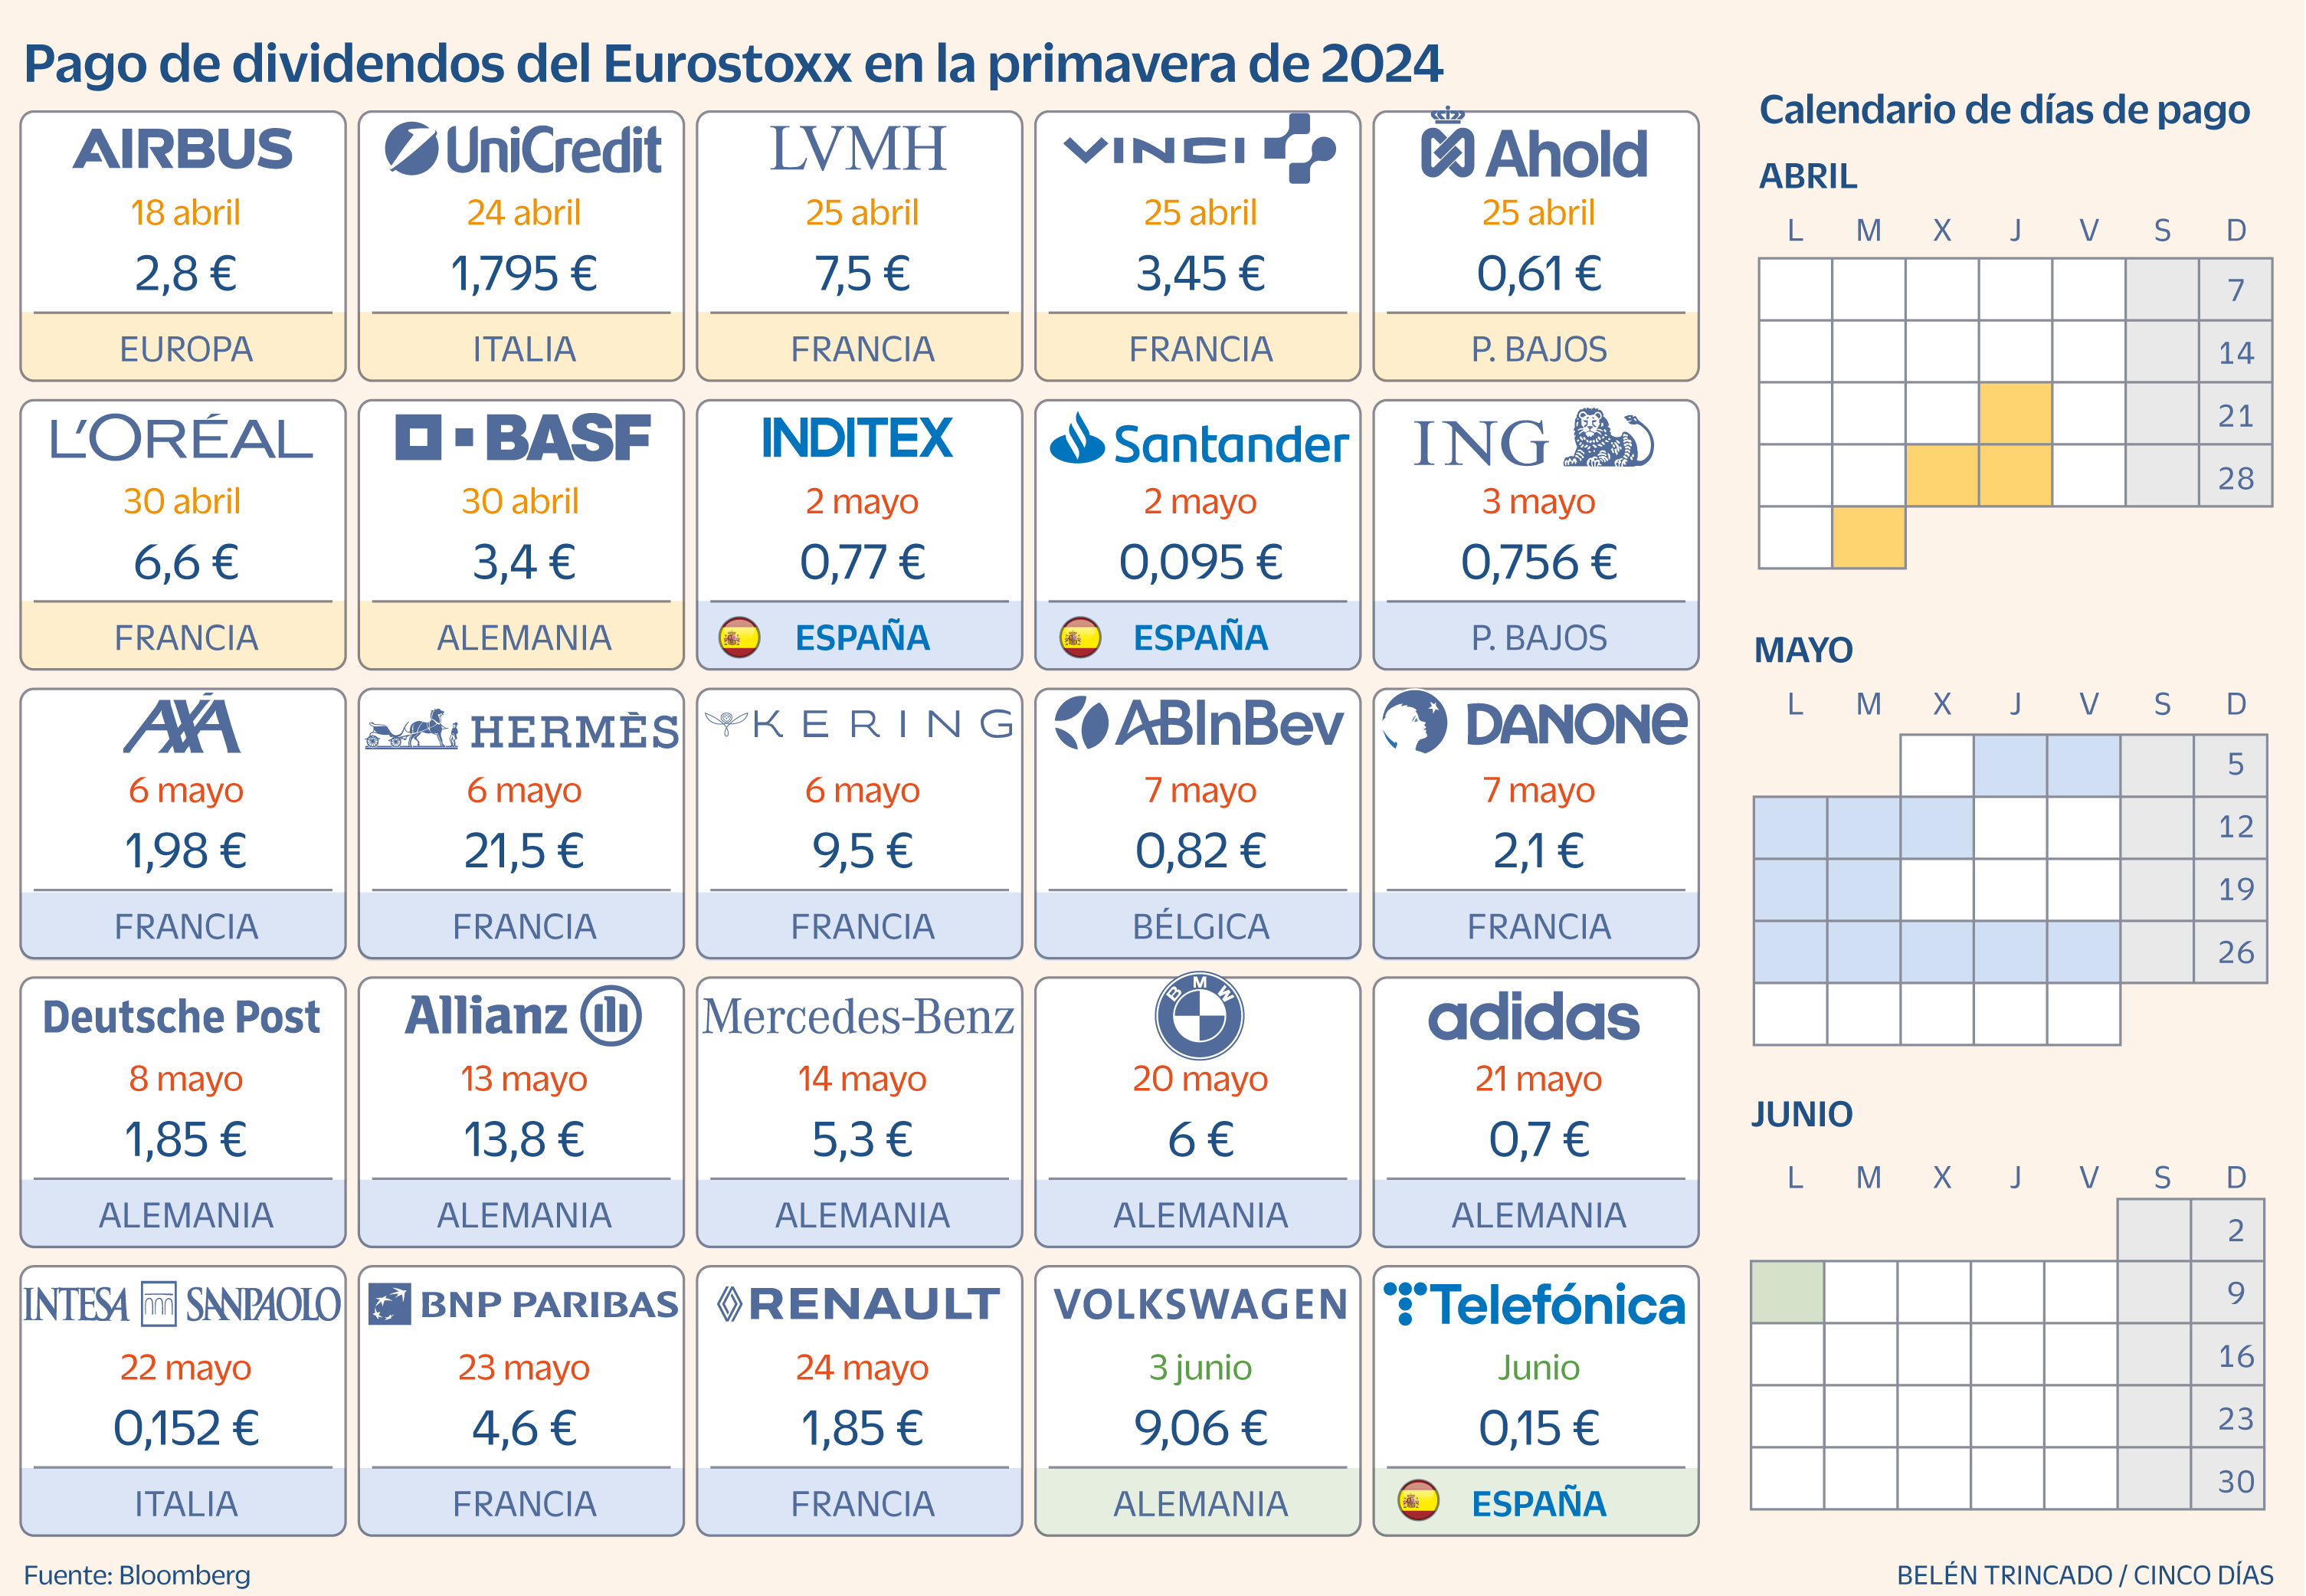 Temporada alta de dividendos europeos: 70.000 millones de euros hasta junio